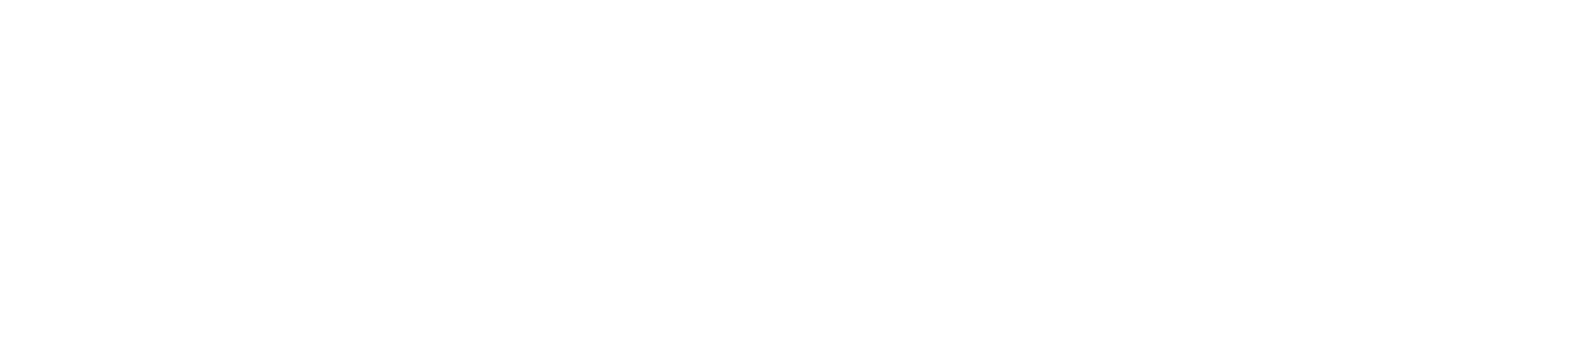 Advantage Solutions logo grand pour les fonds sombres (PNG transparent)